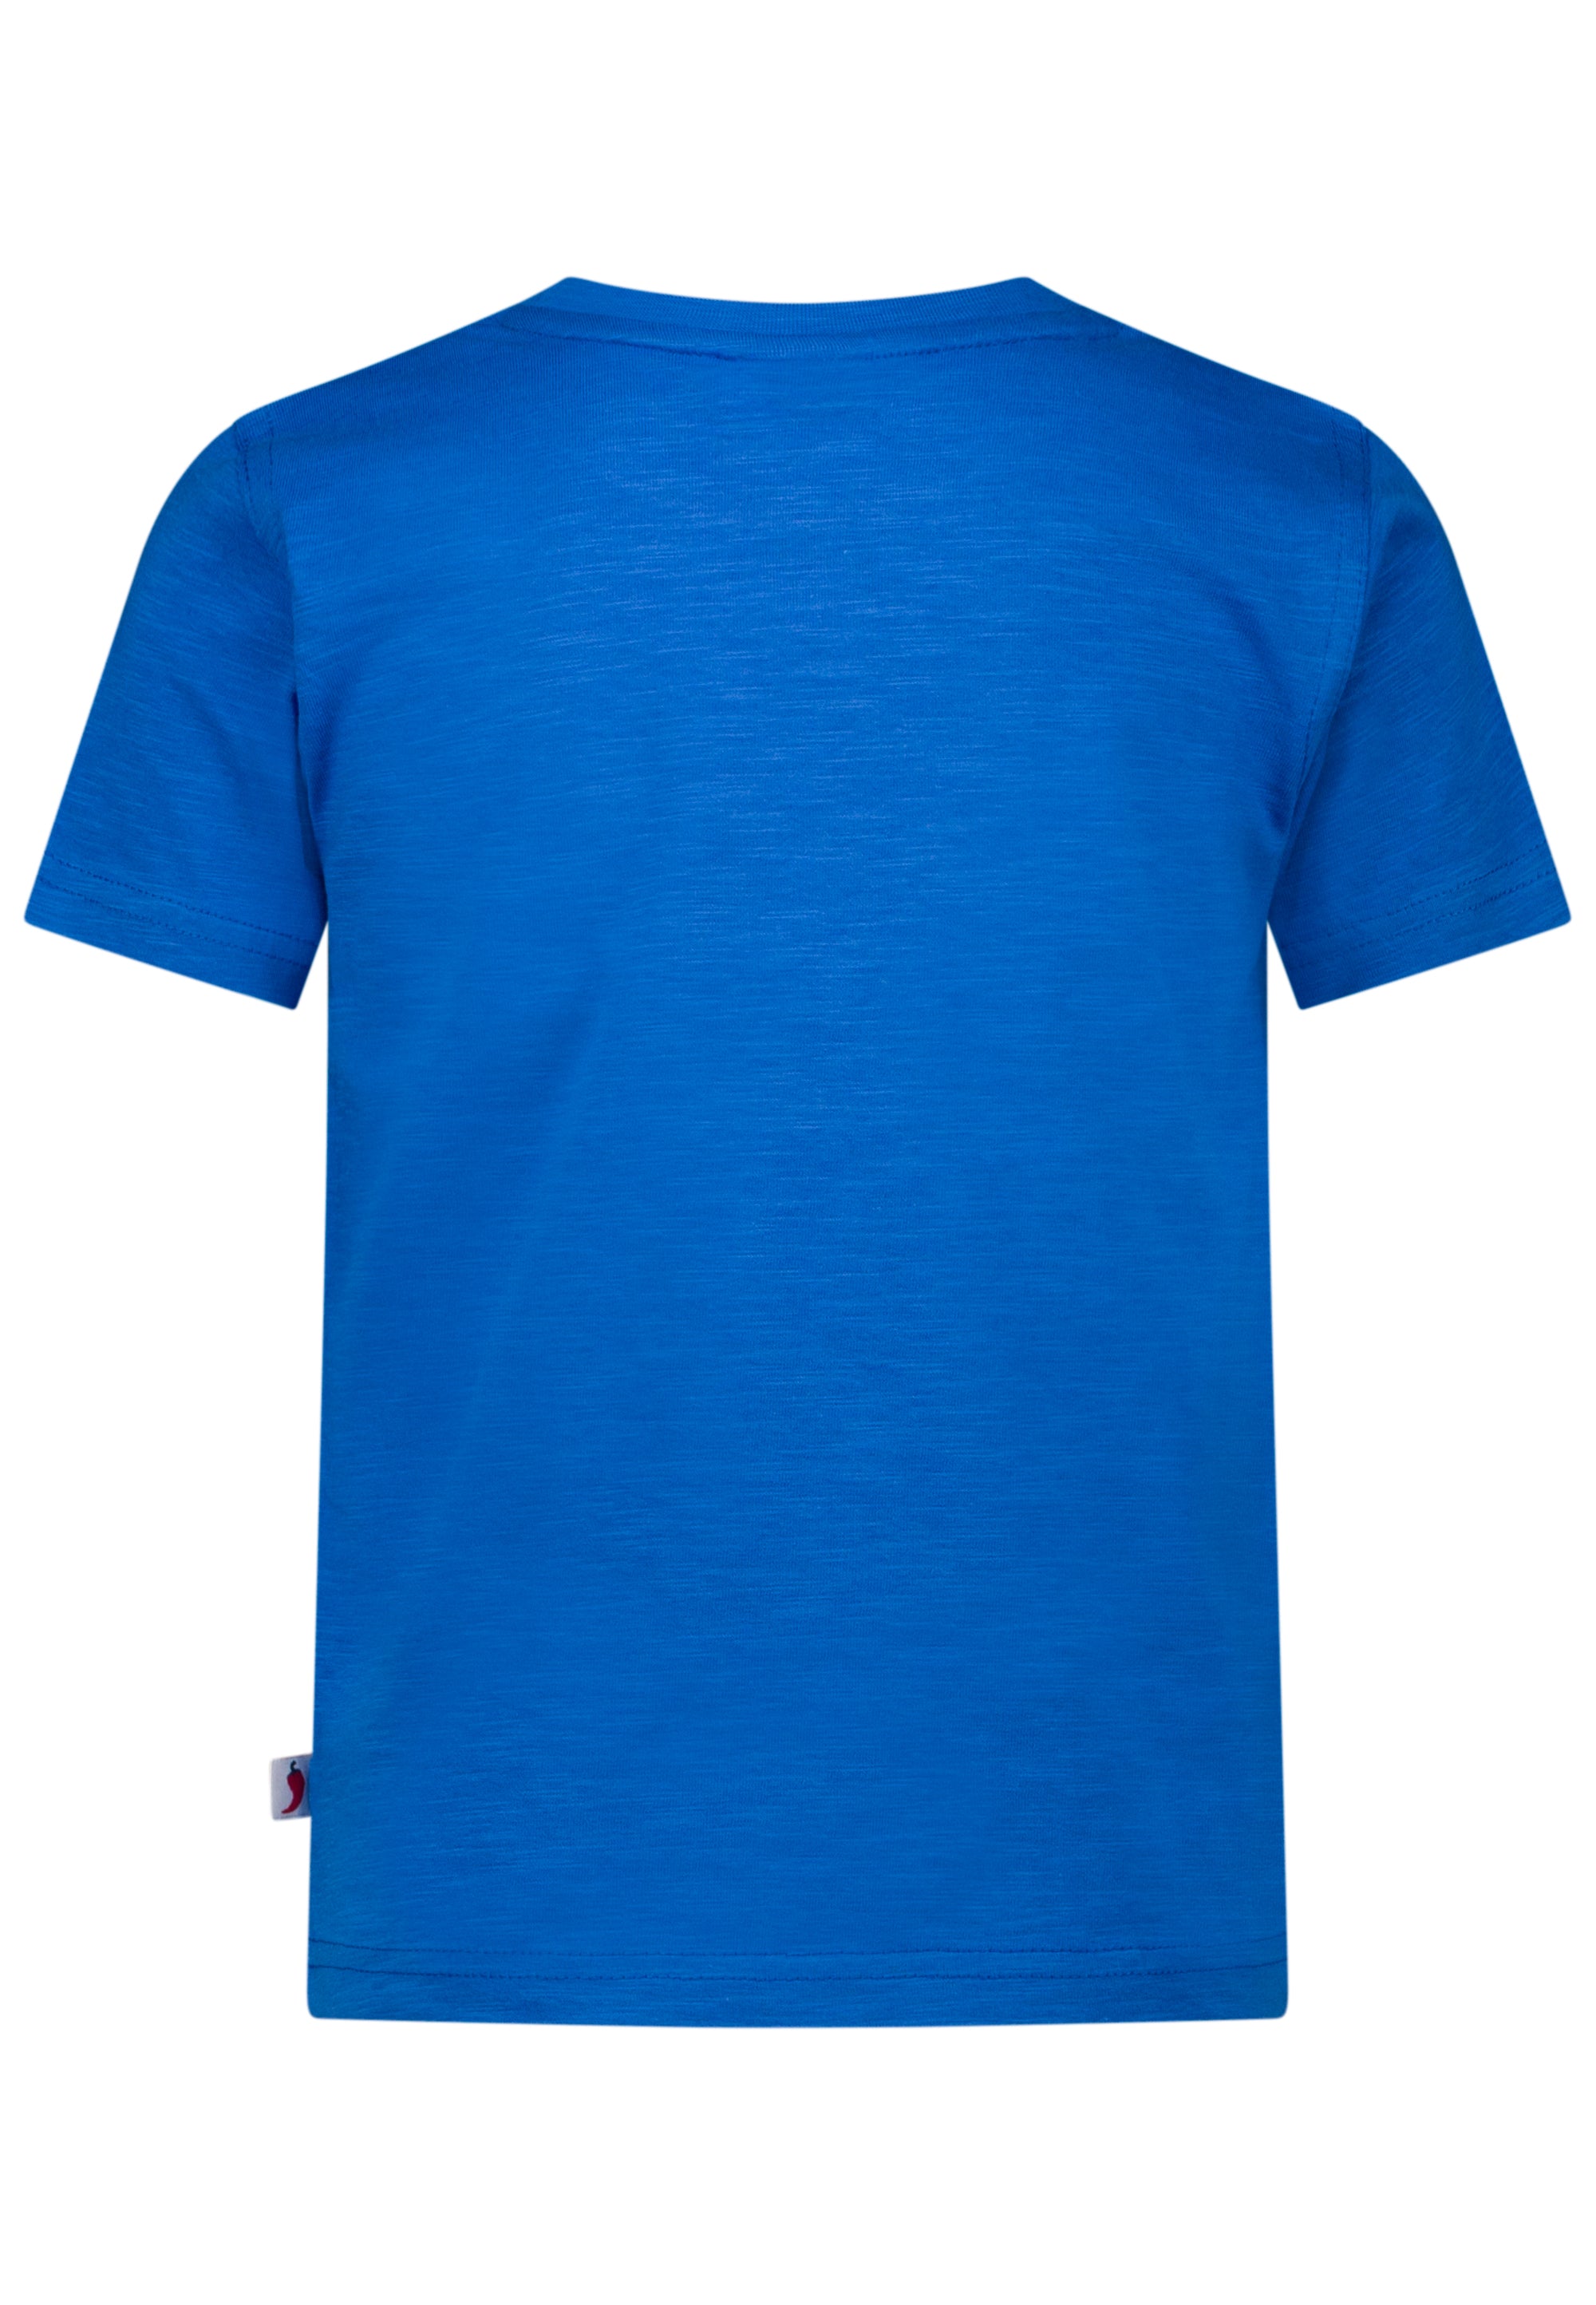 Salt & Pepper Jungen T-Shirt mit Baustellen Print 43112748